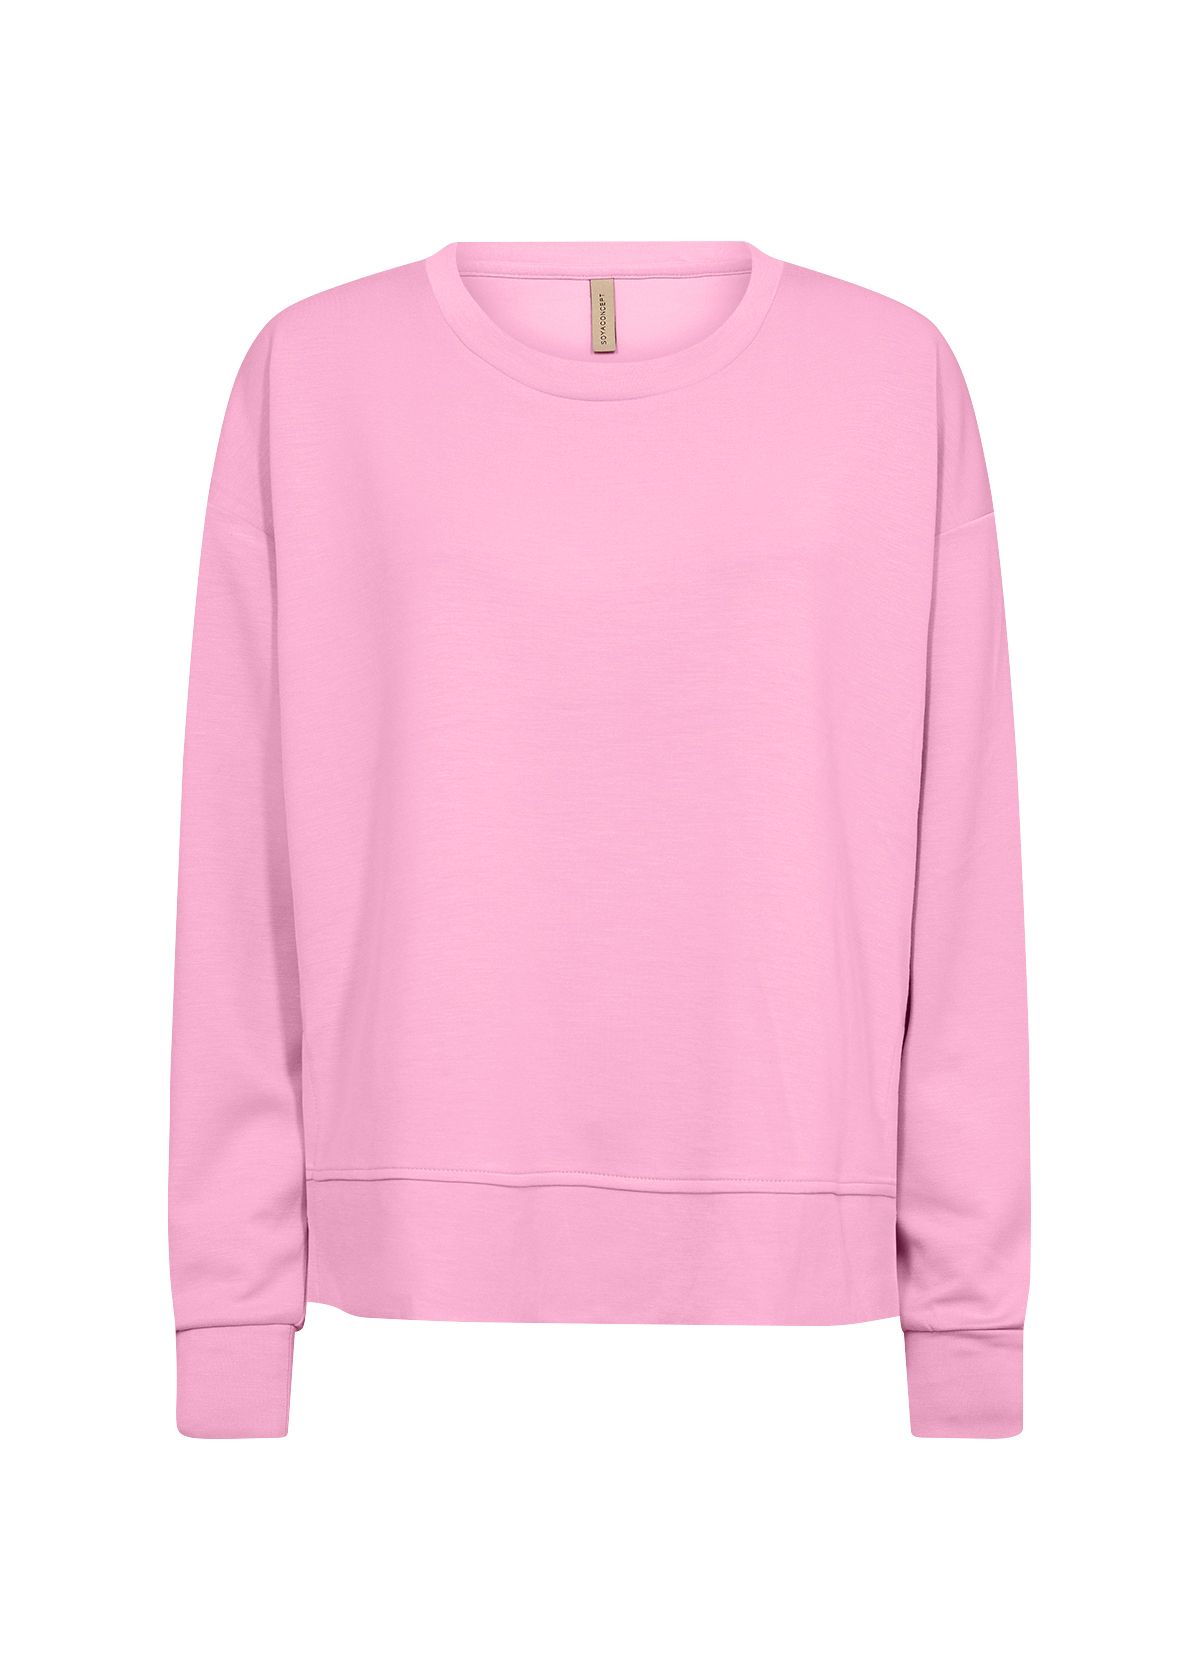 BANU164 sweatshirt lyserød